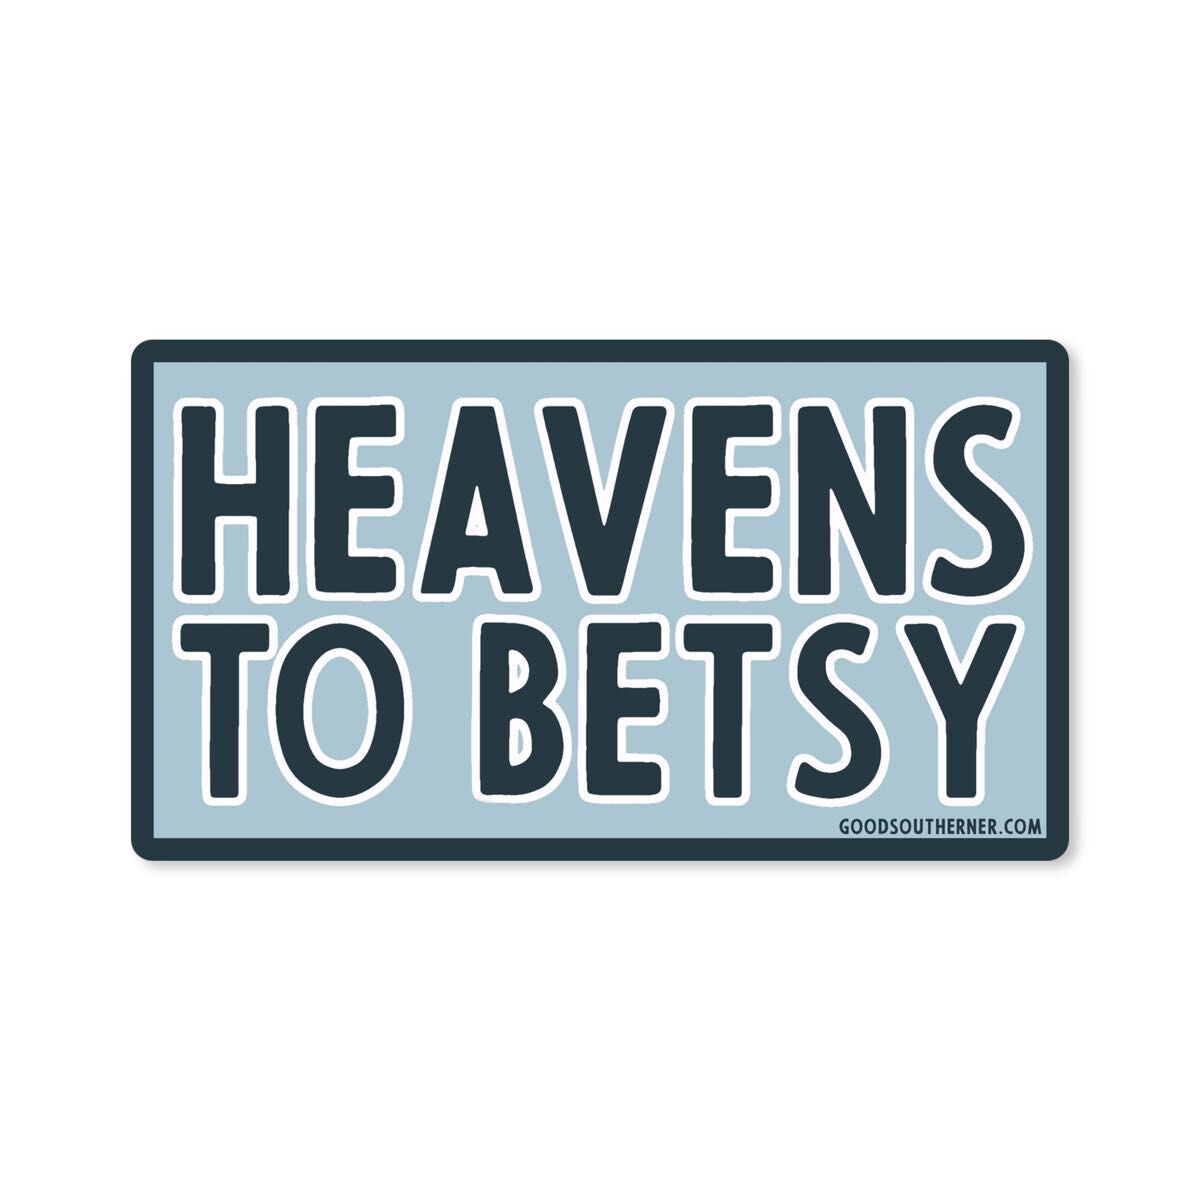 Heavens to Betsy Vinyl Sticker